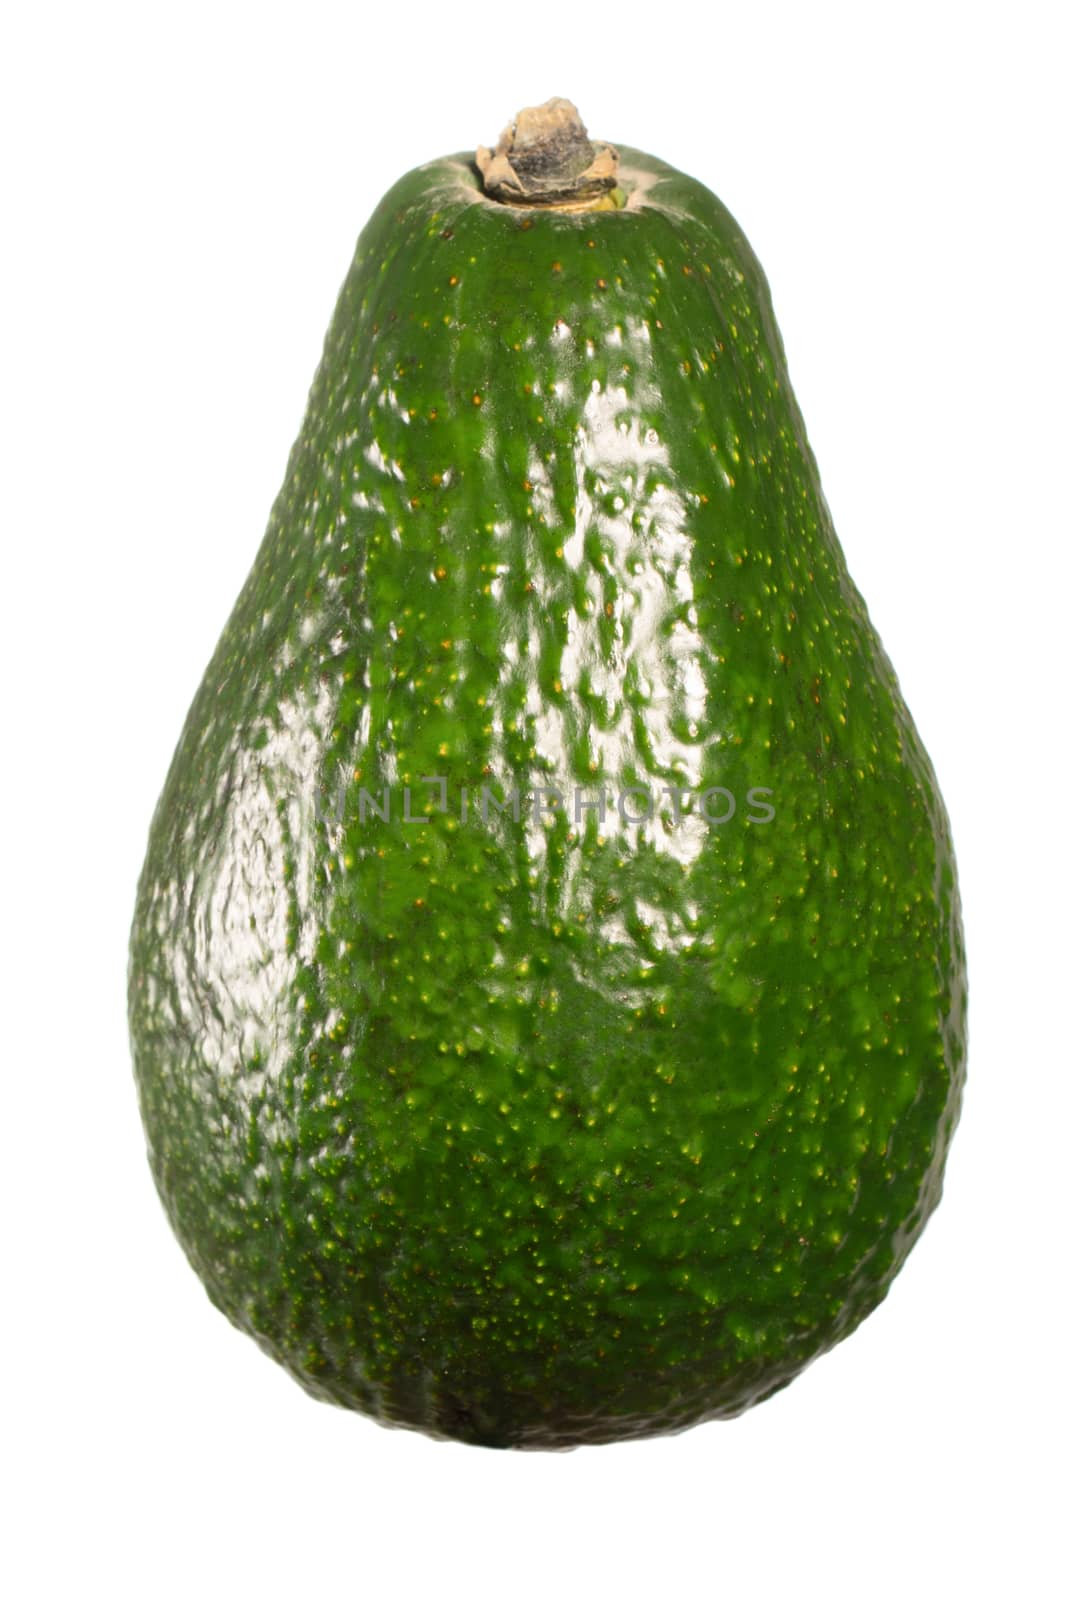 Whole avocado isolated on white